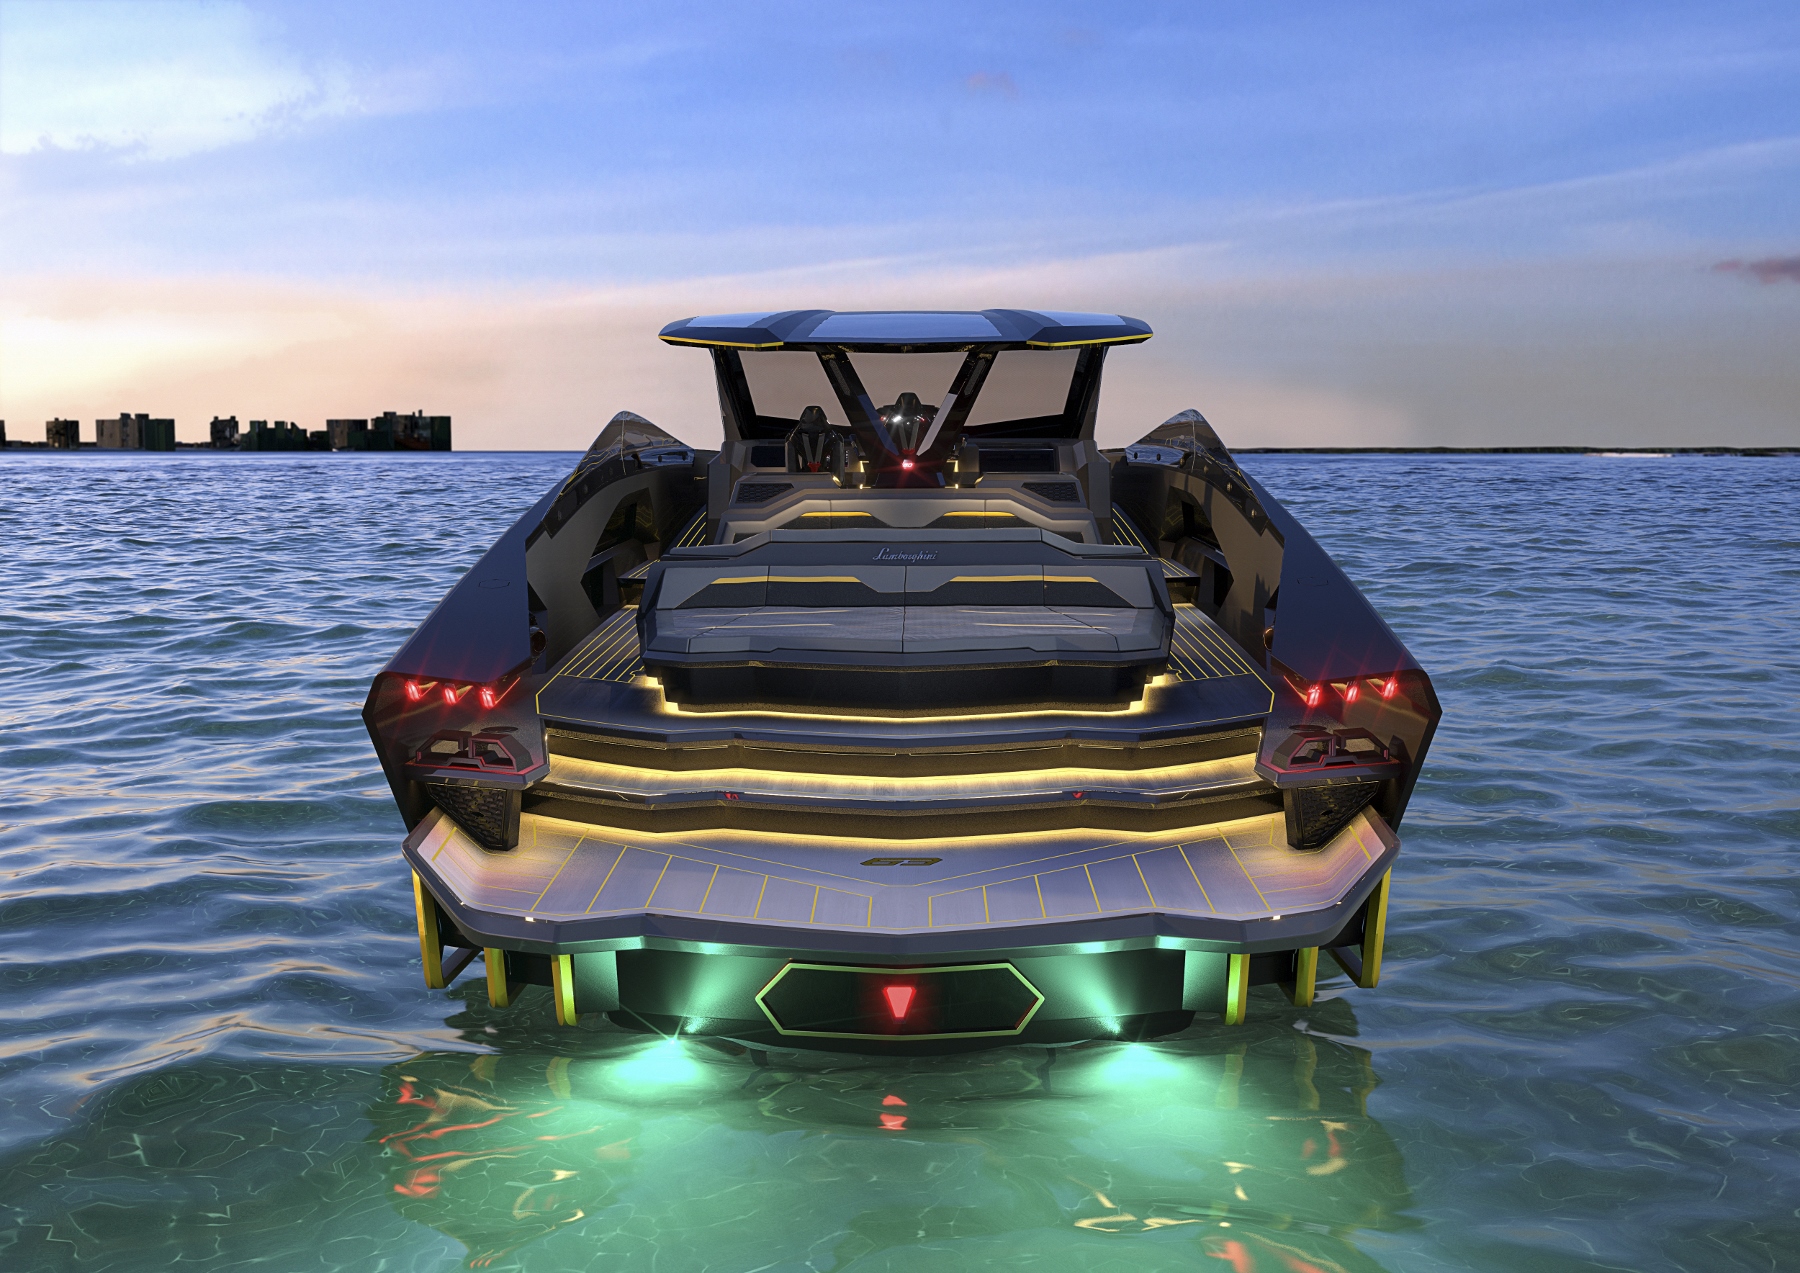 Tecnomar for Lamborghini 63: Názov Lamborghini sa dostane na vodu